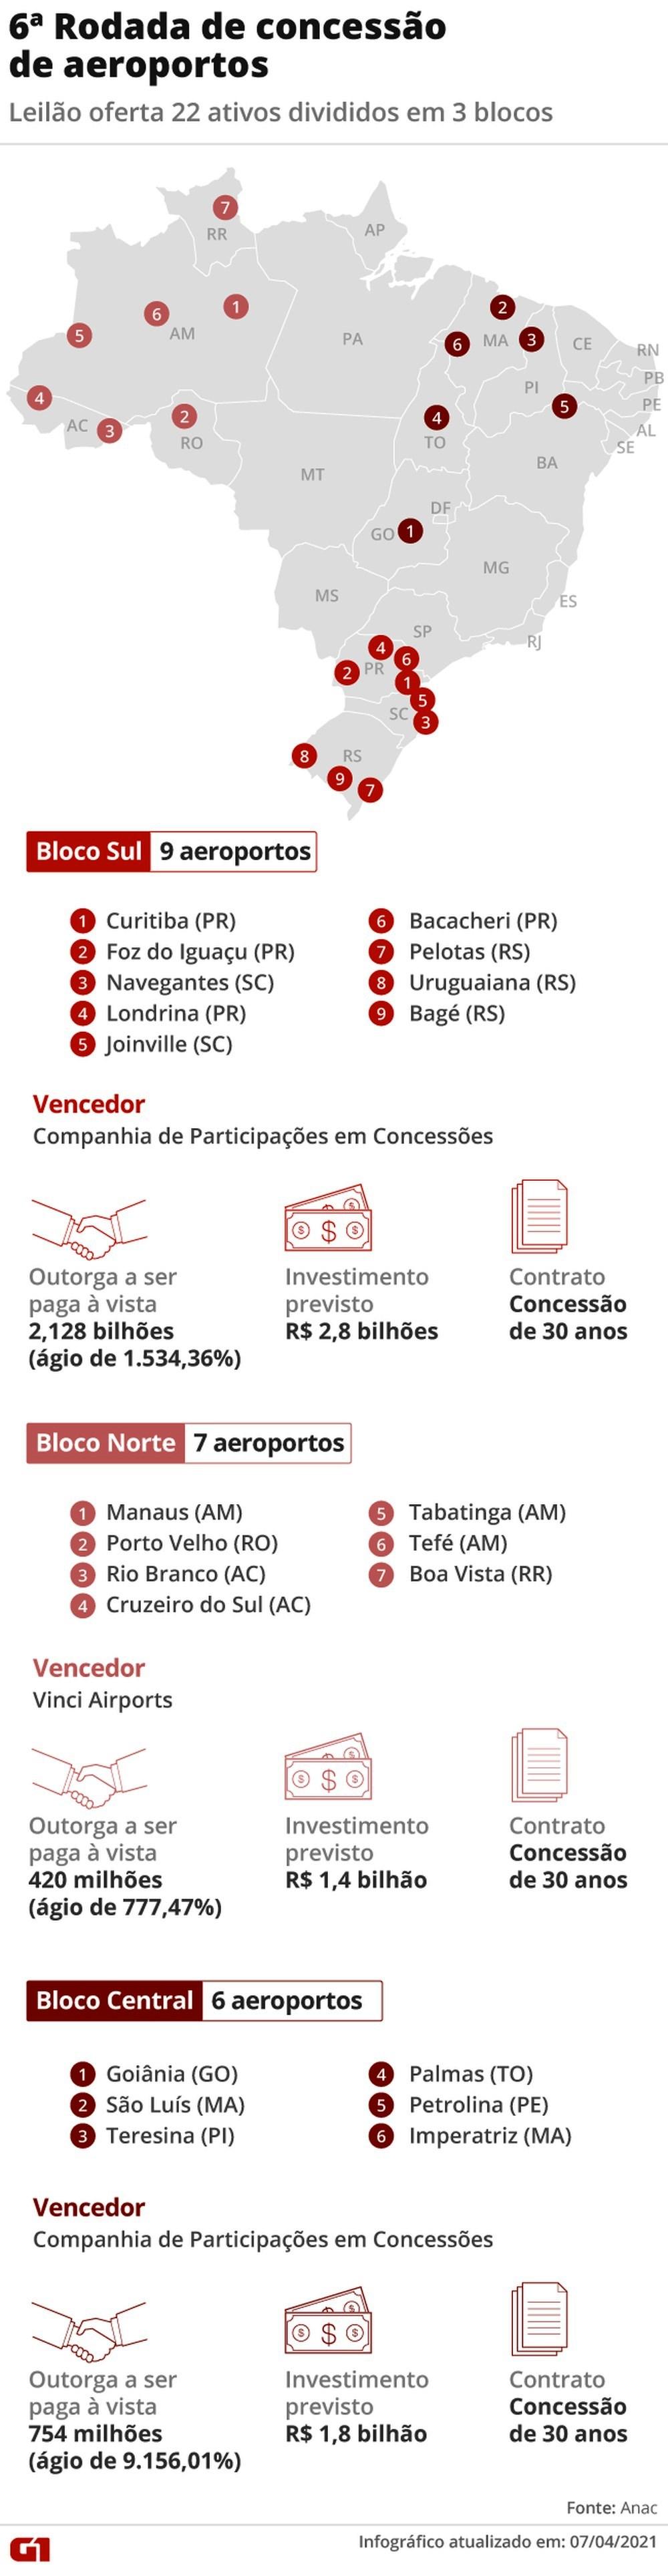 Governo federal arrecada R$ 3,3 bilhões com leilão de 22 aeroportos; veja os vencedores